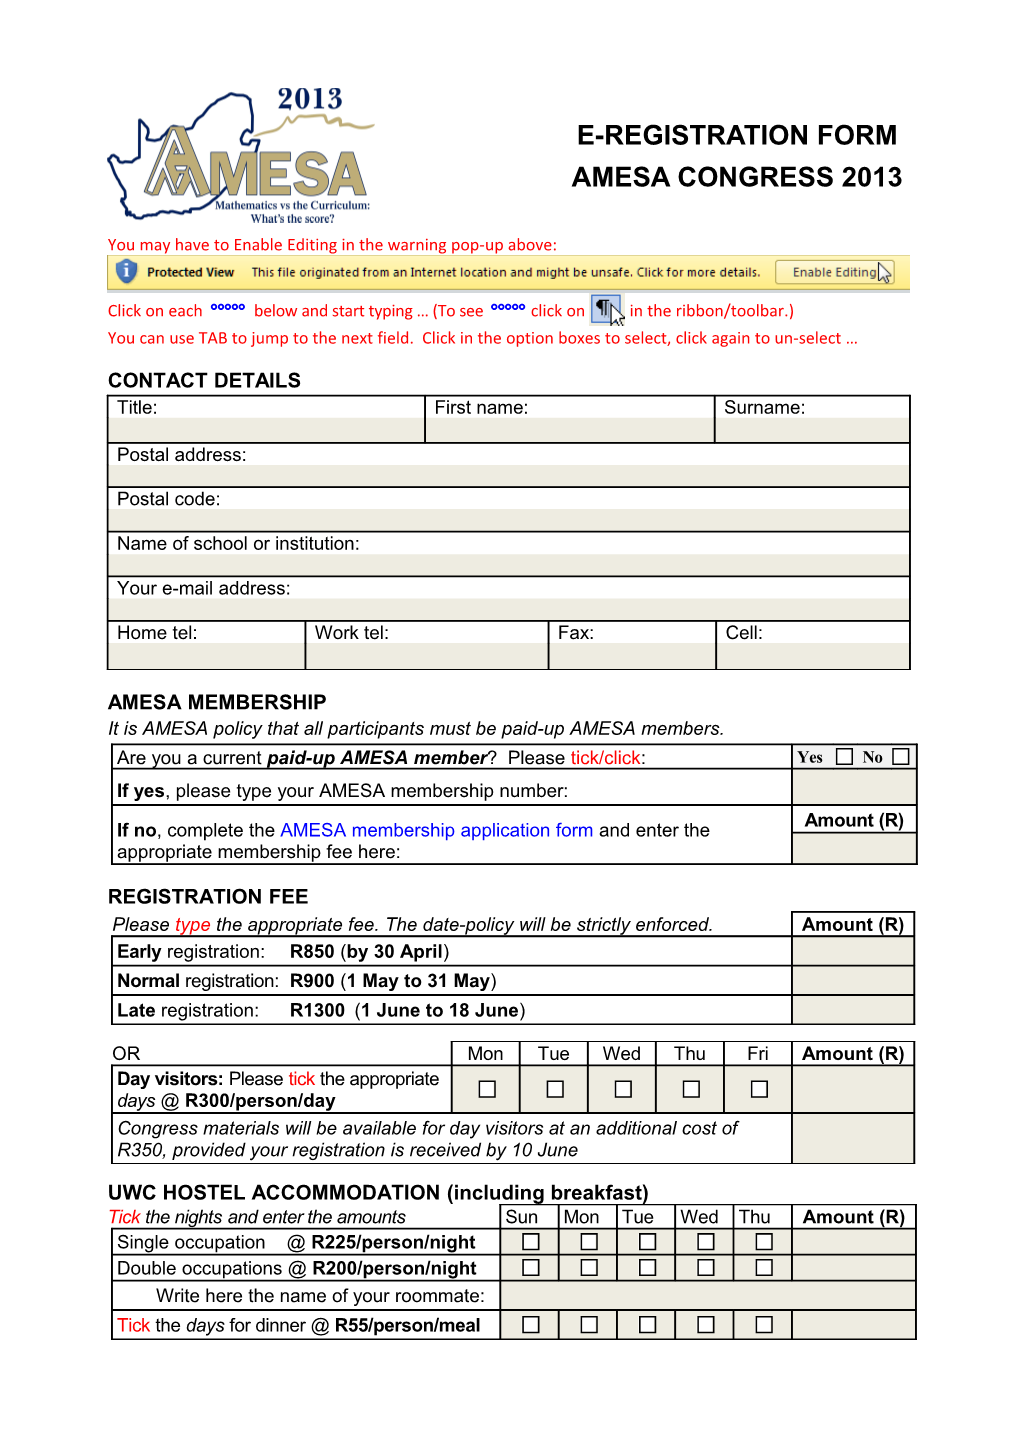 E-Registration Form